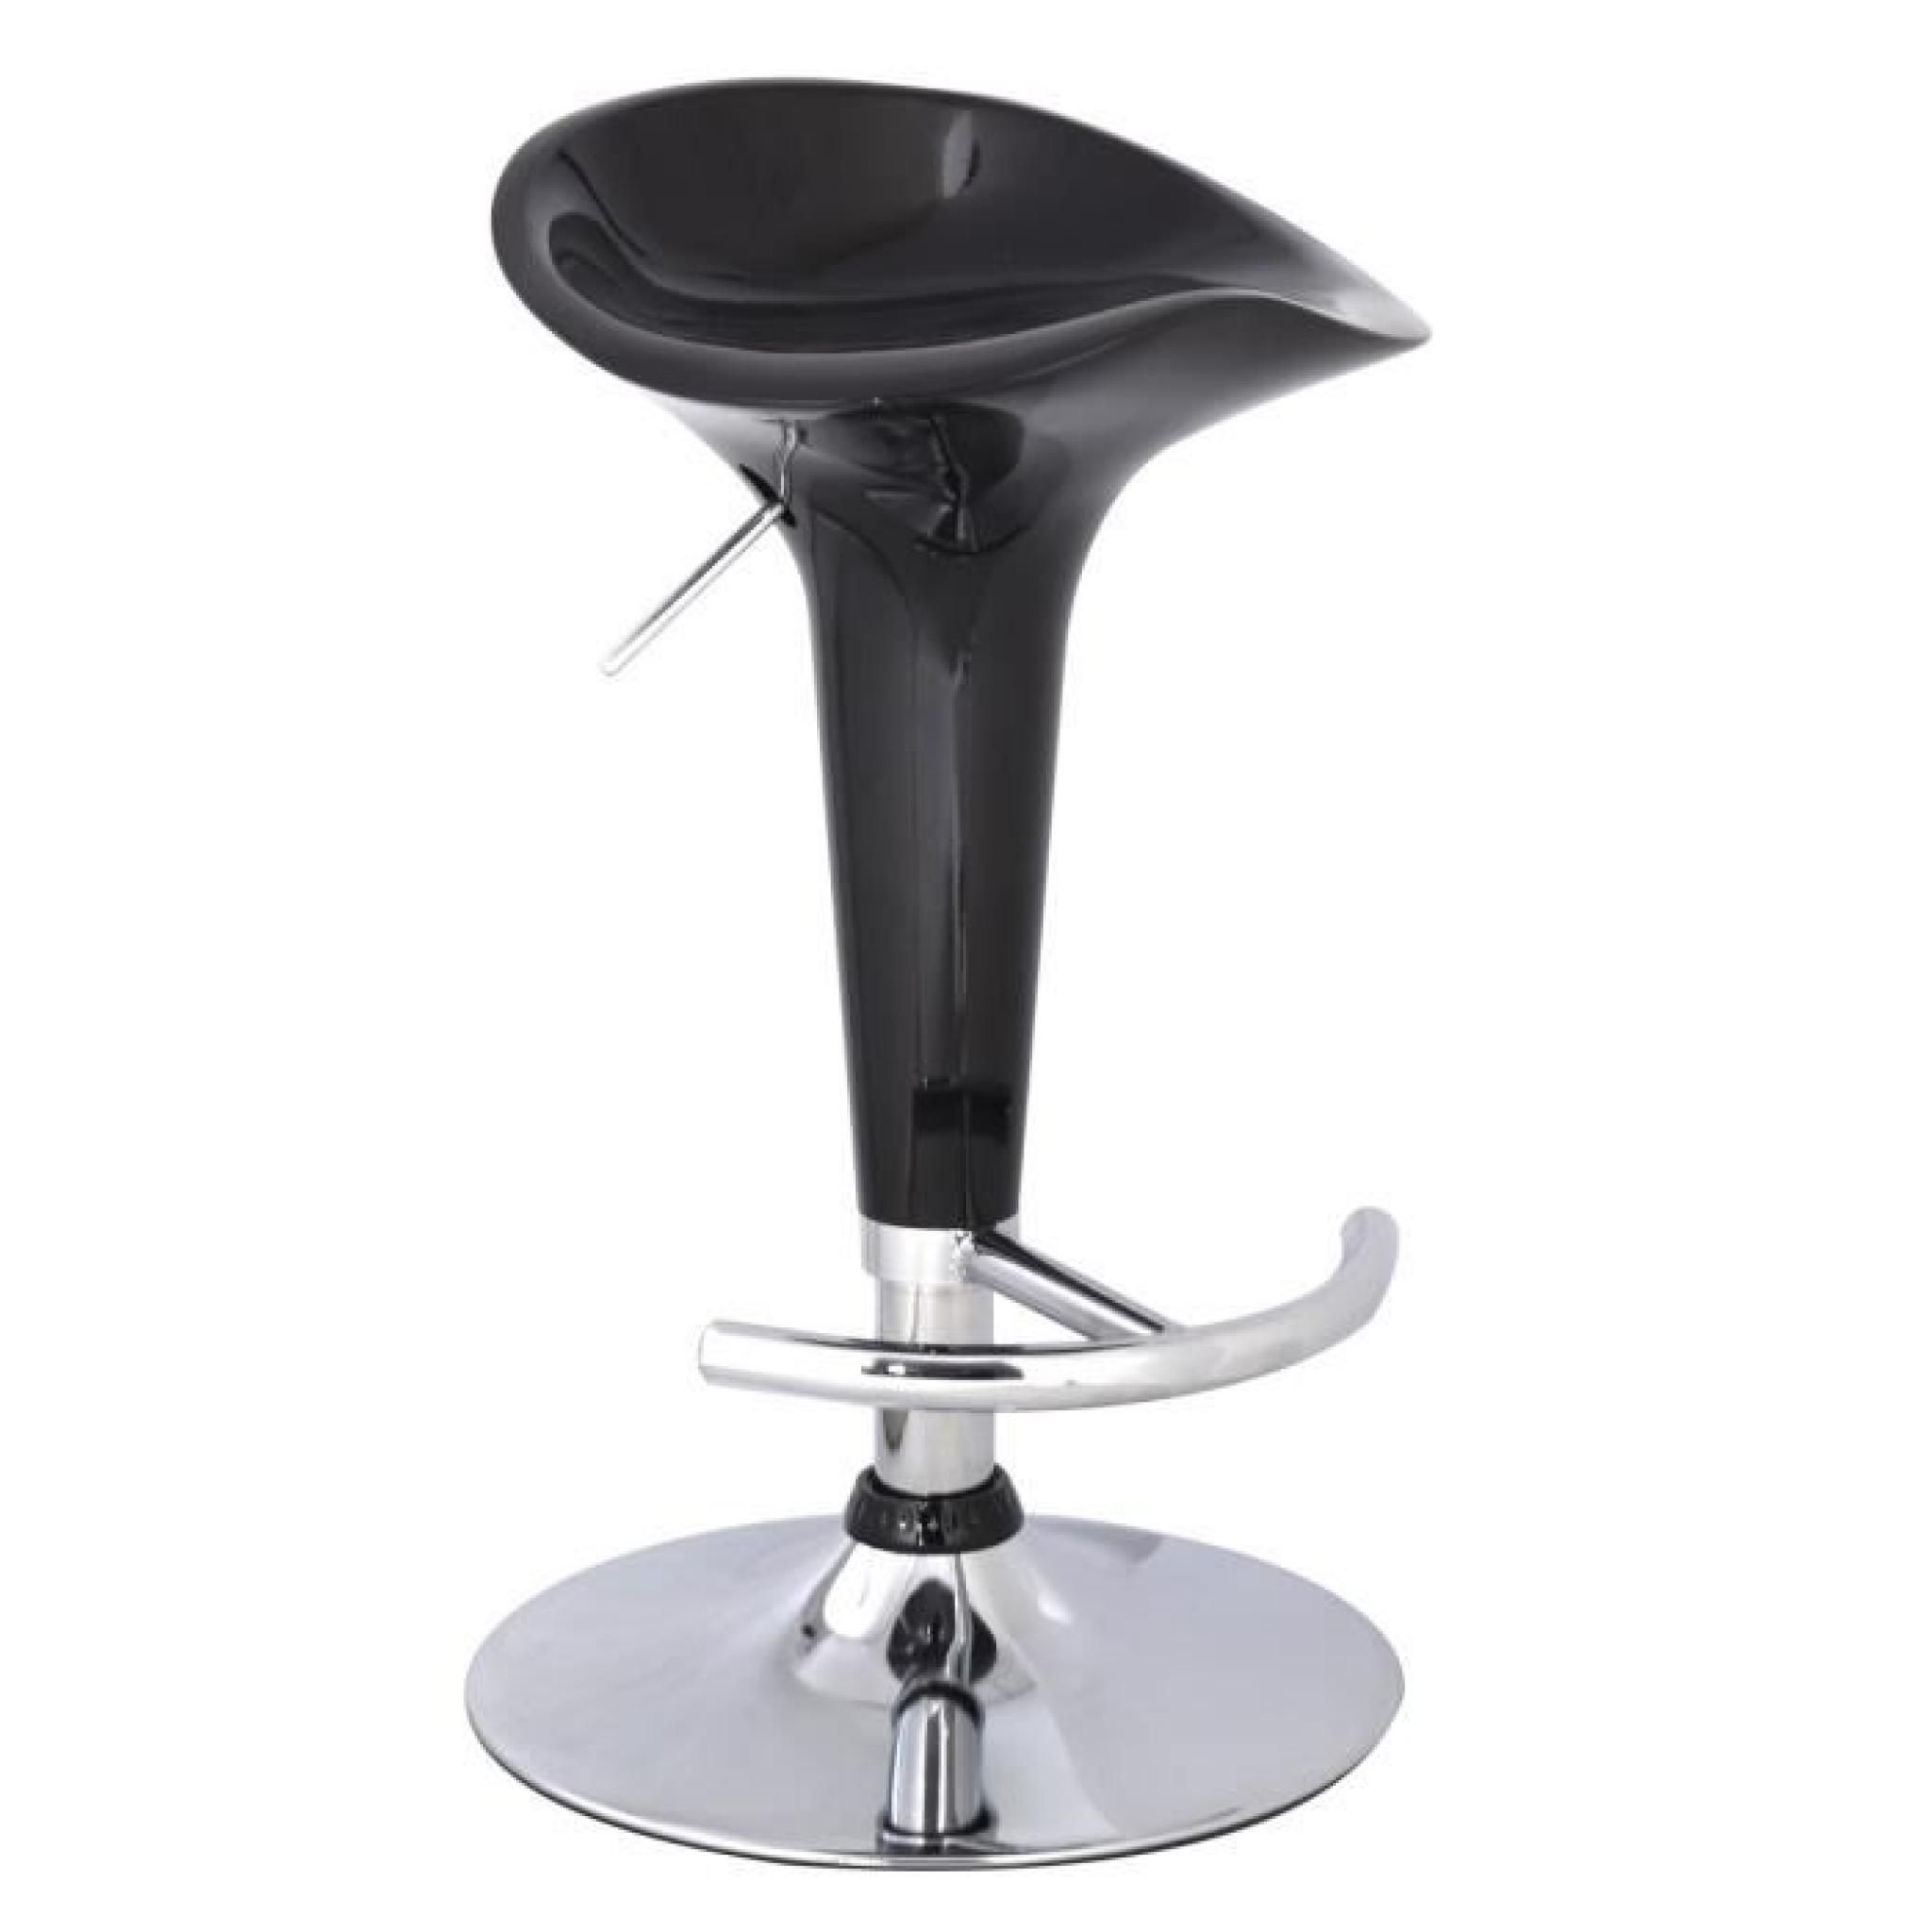 2 x Tabouret de bar chaise de cuisine pivotante 360° hauteur réglable pas cher